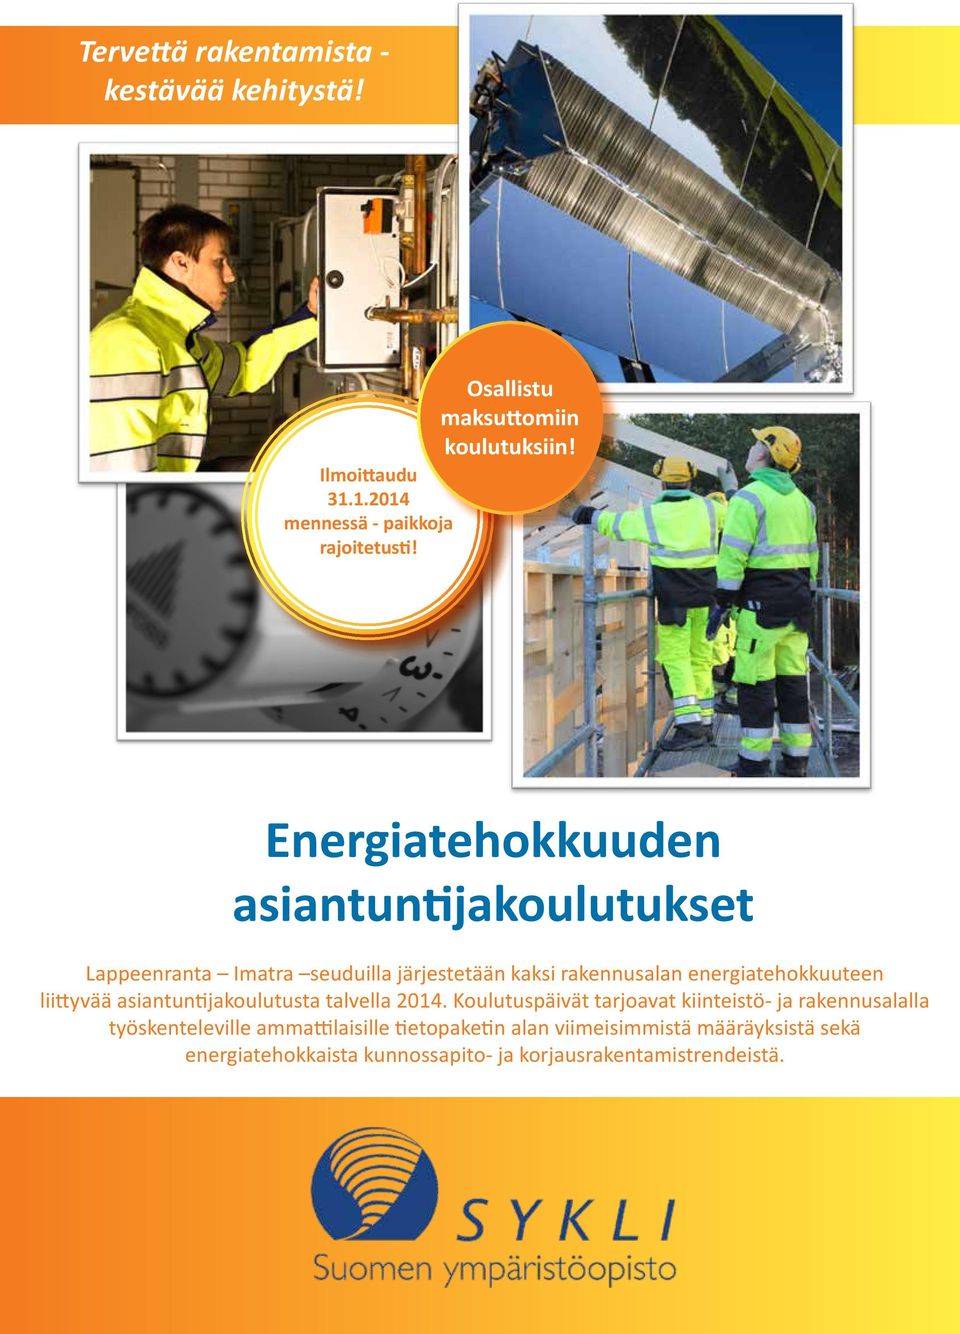 Energiatehokkuuden asiantuntijakoulutukset Lappeenranta Imatra seuduilla järjestetään kaksi rakennusalan energiatehokkuuteen